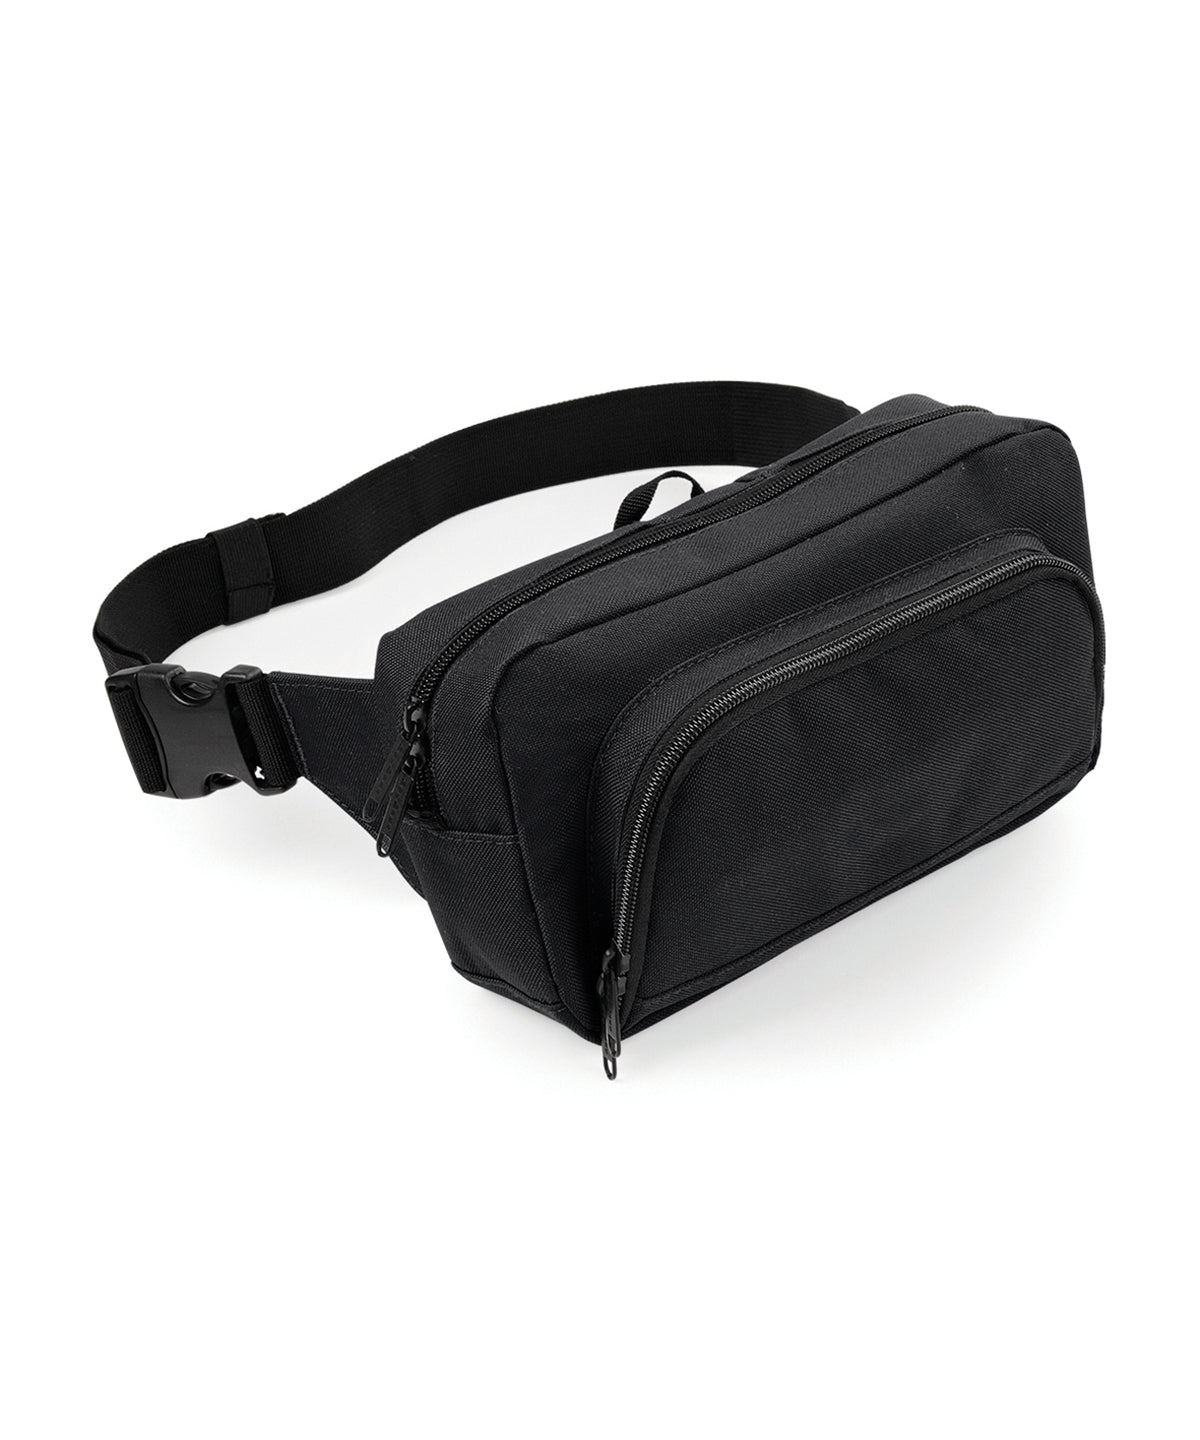 Personalised Bags - Black Bagbase Organiser waistpack